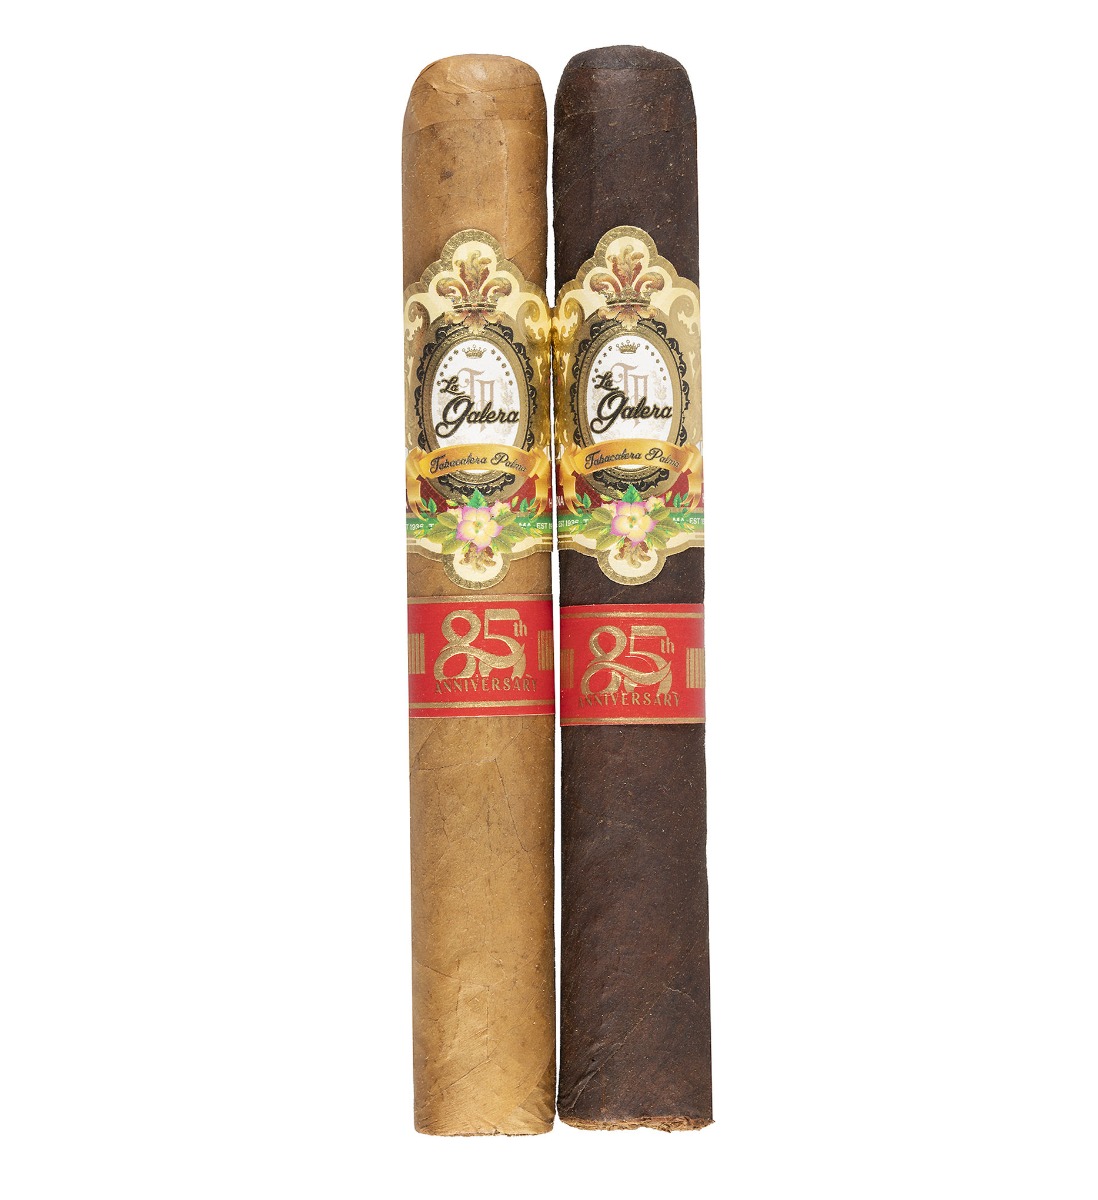 La Galera 85th Anniversary Single Cigars